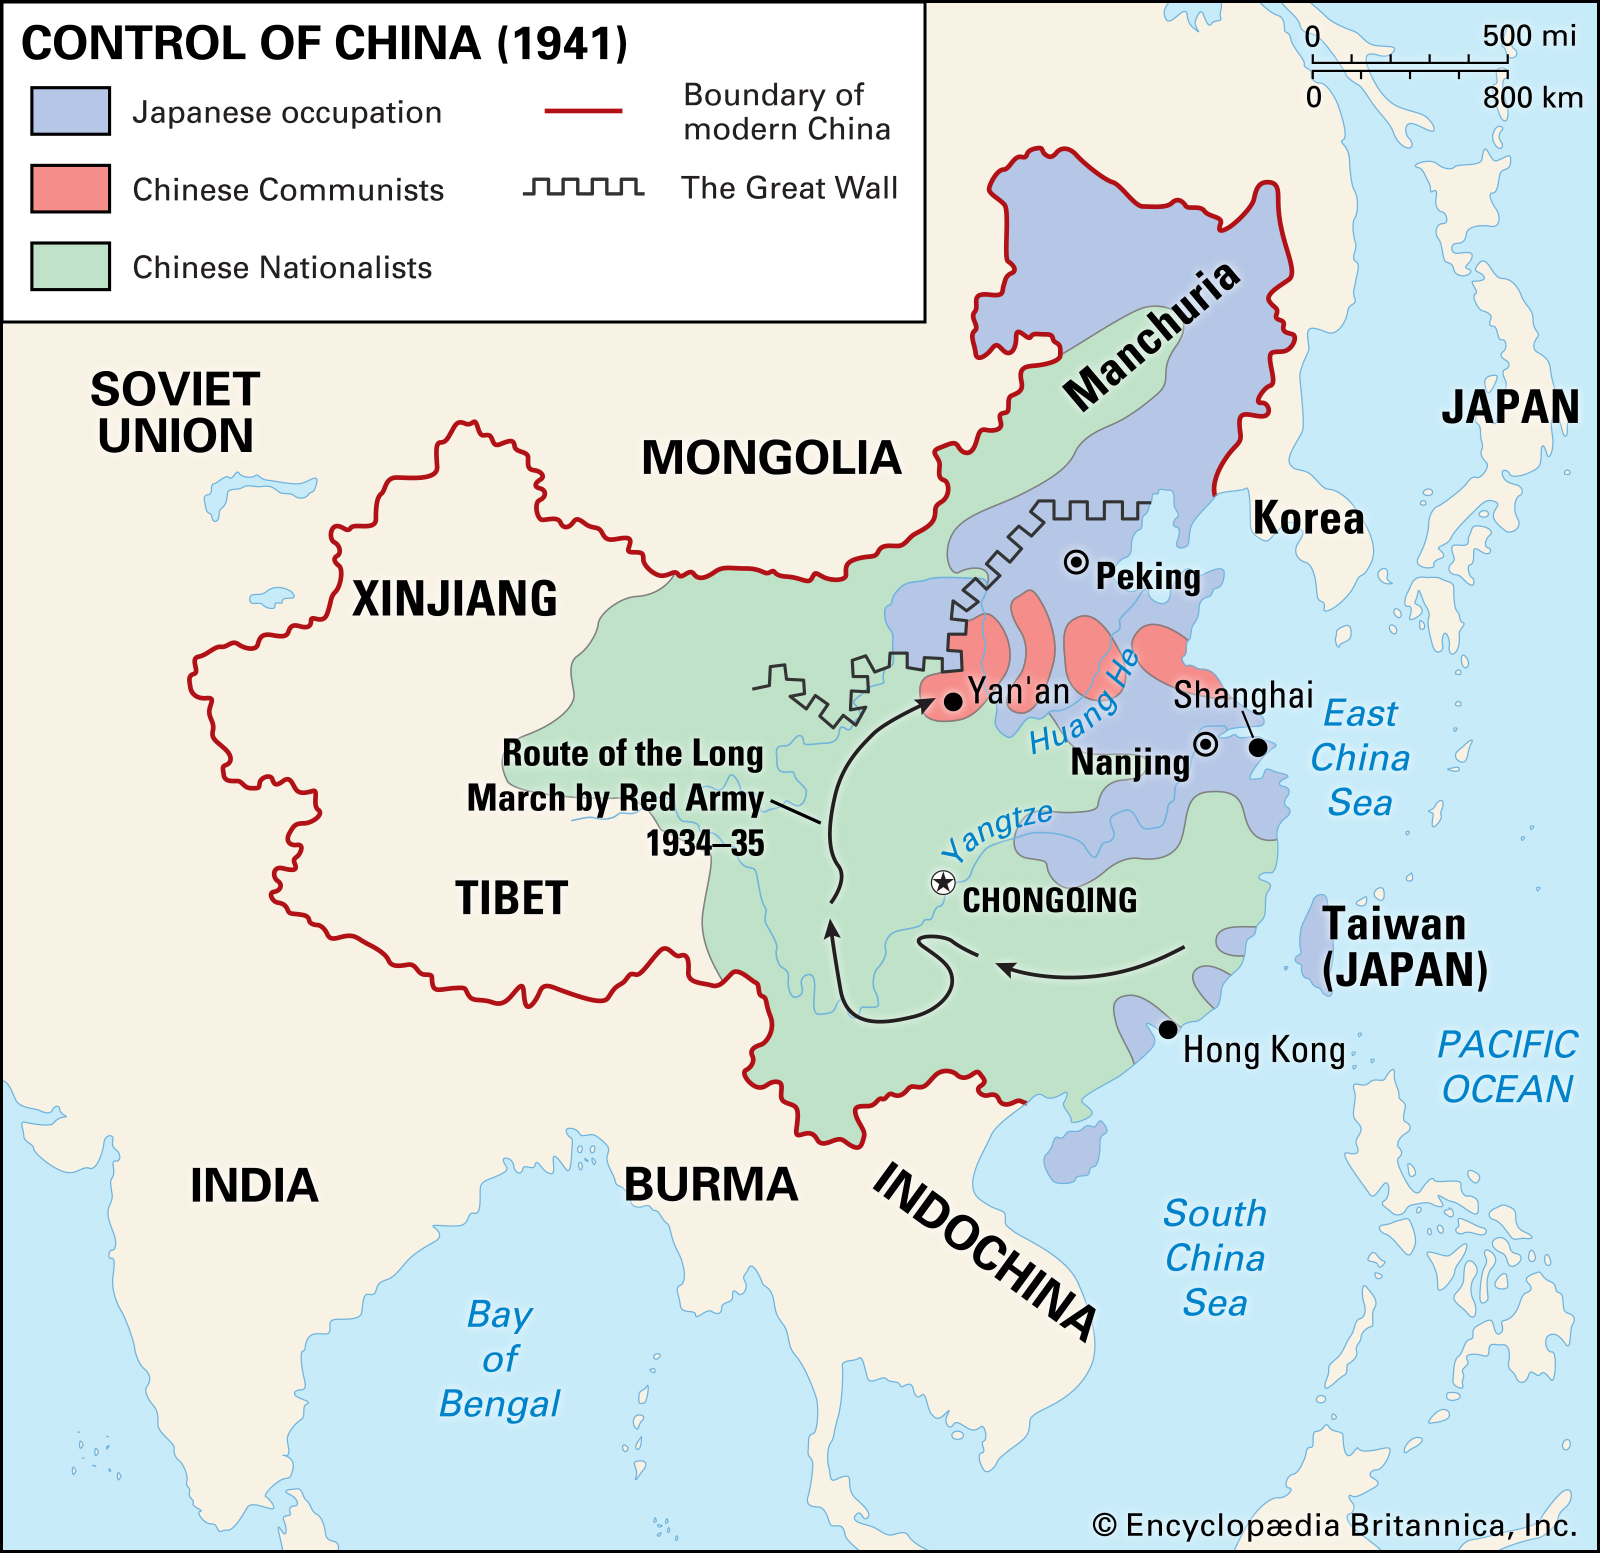 Ba huyền thoại về Nội chiến Trung Quốc